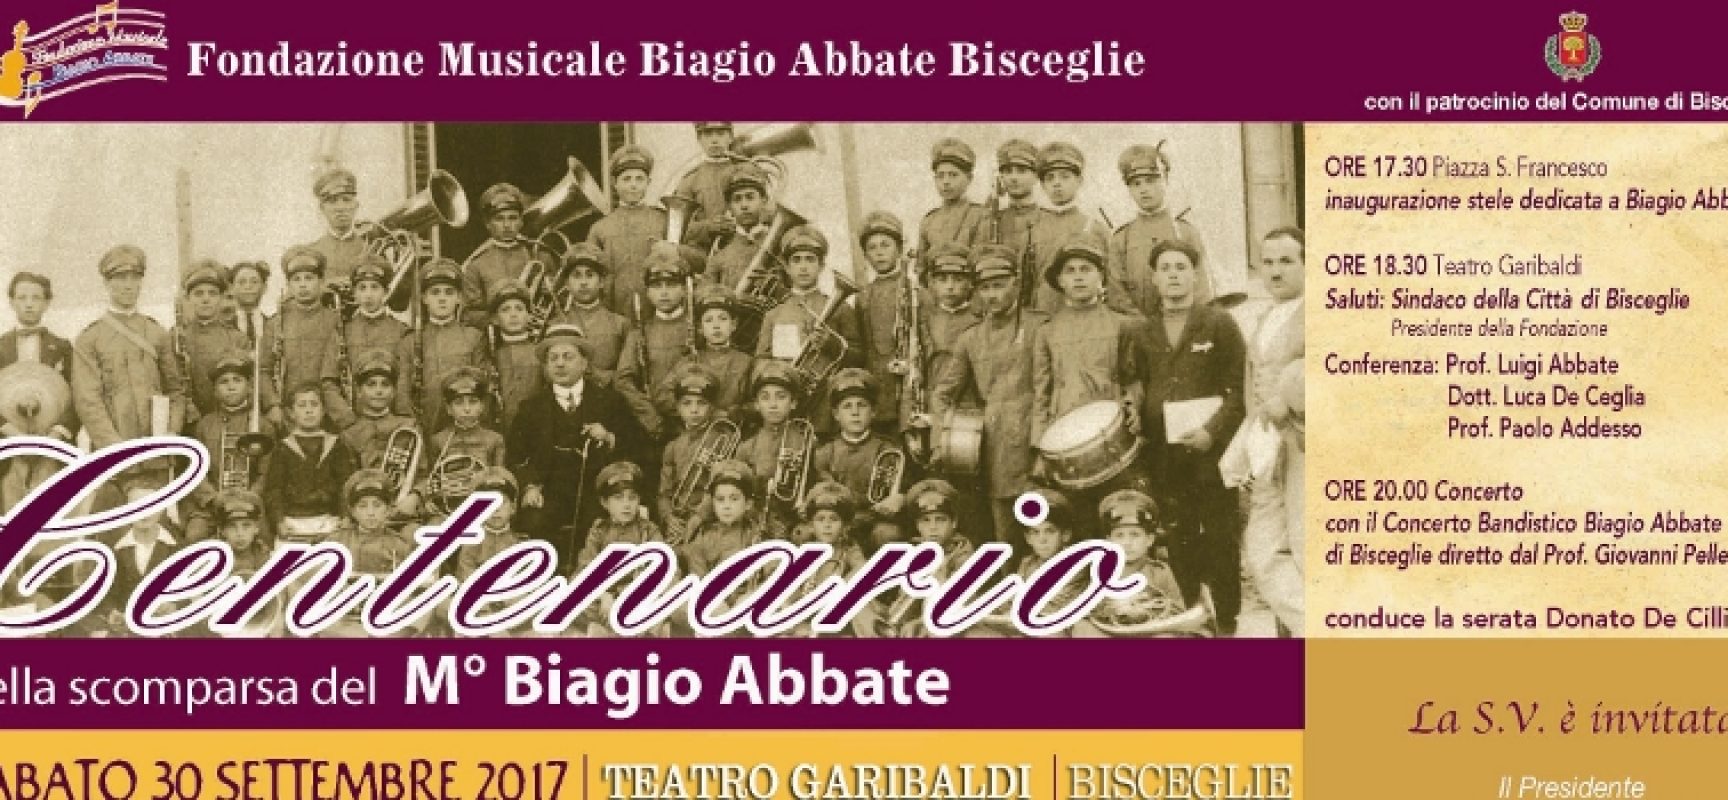 Un ricordo musicale dedicato al centenario della scomparsa del maestro Biagio Abbate